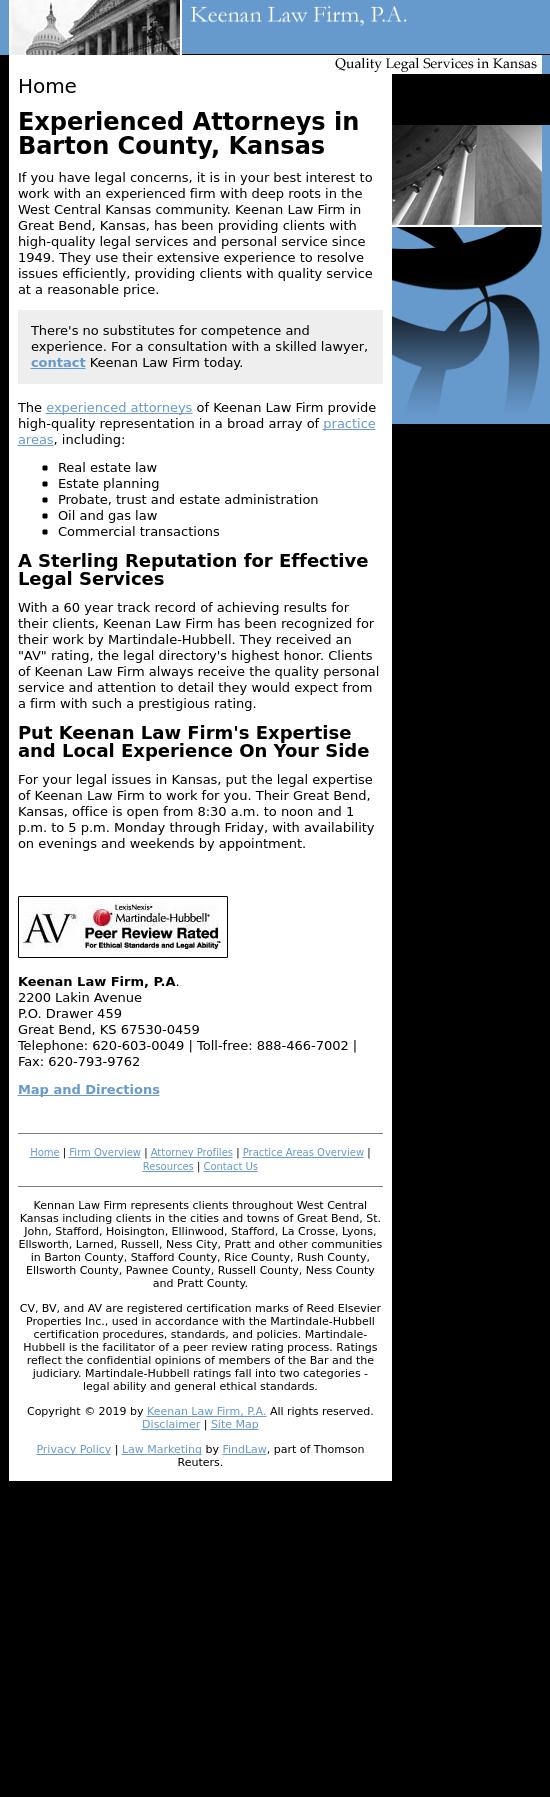 Keenan & Boeckman Law Firm, P.A. - La Crosse KS Lawyers